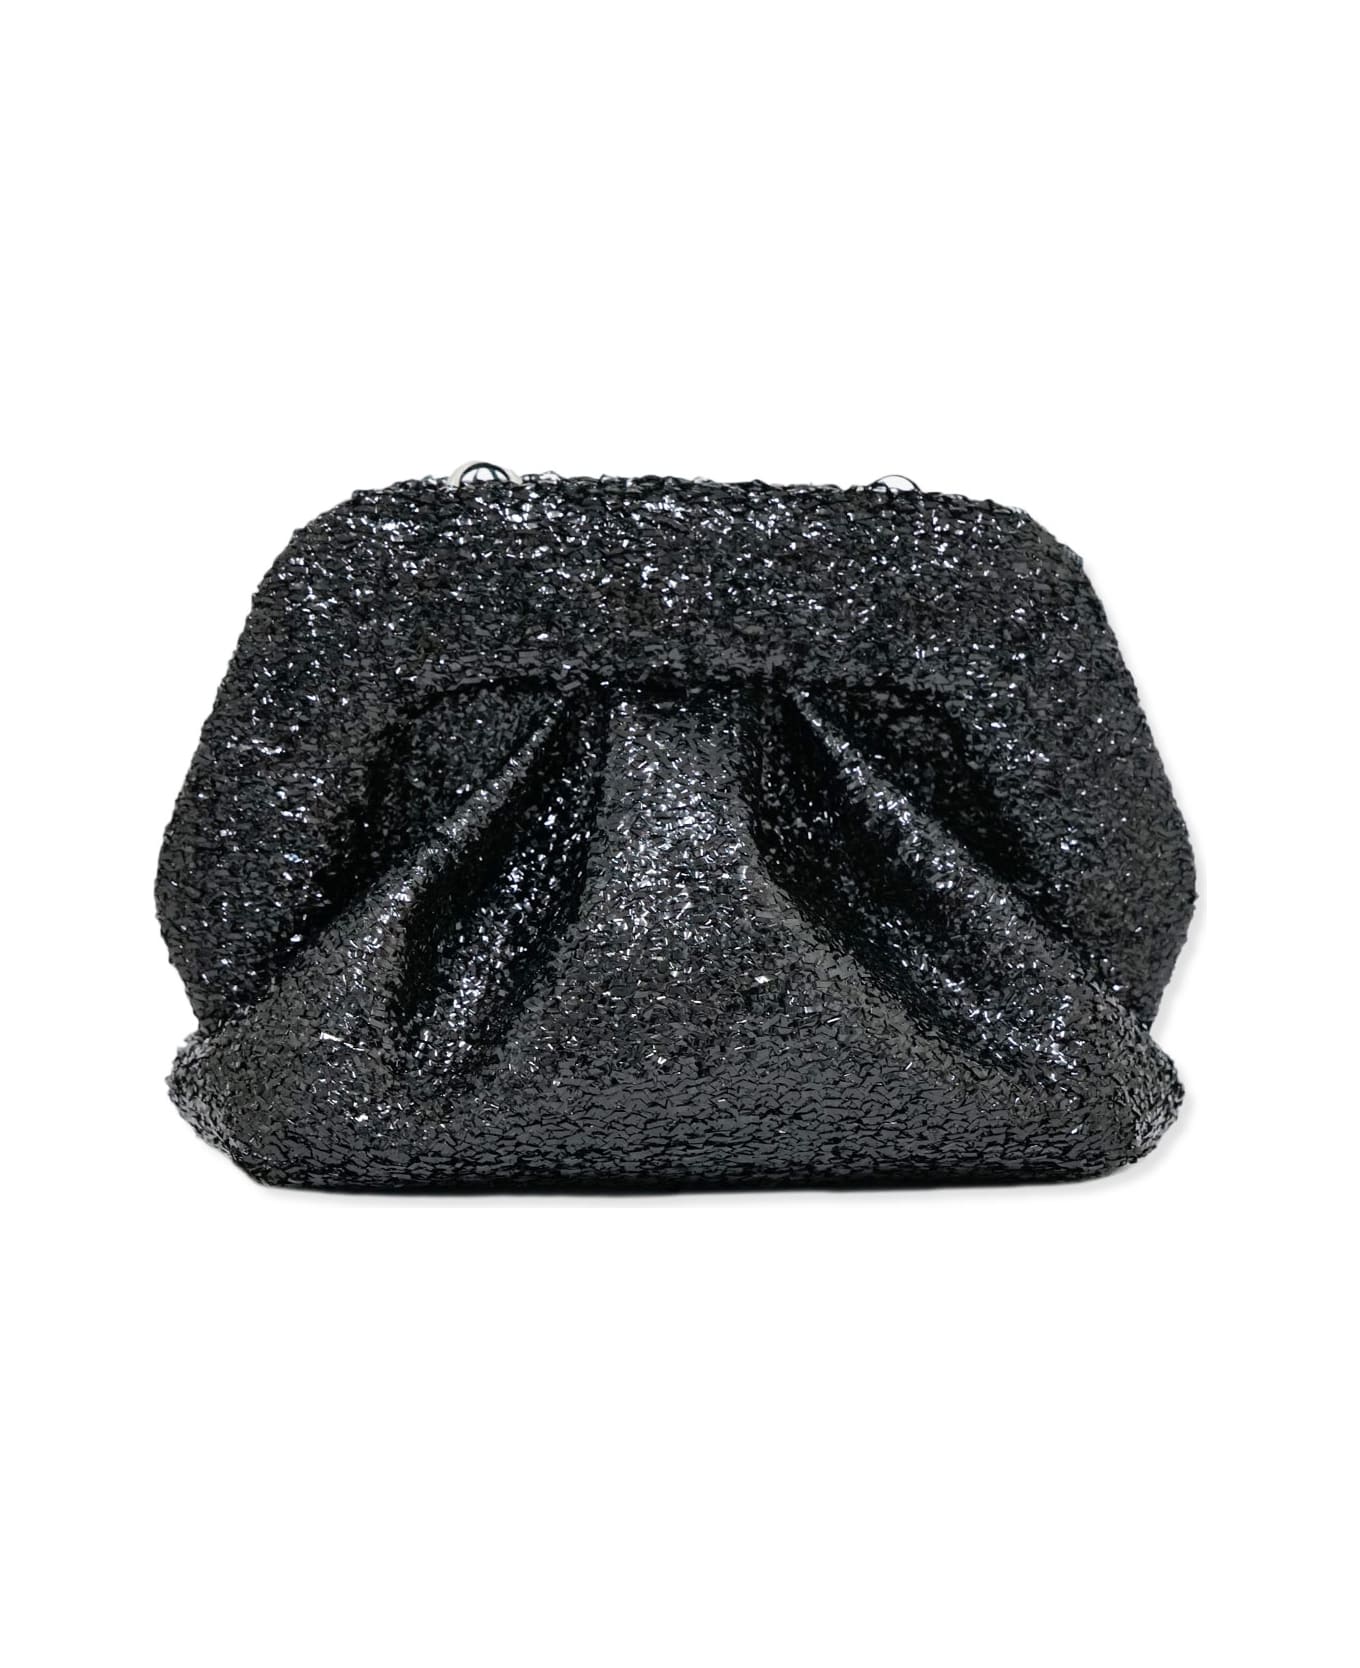 THEMOIRè Handbag THEMOIRè - BLACK ショルダーバッグ